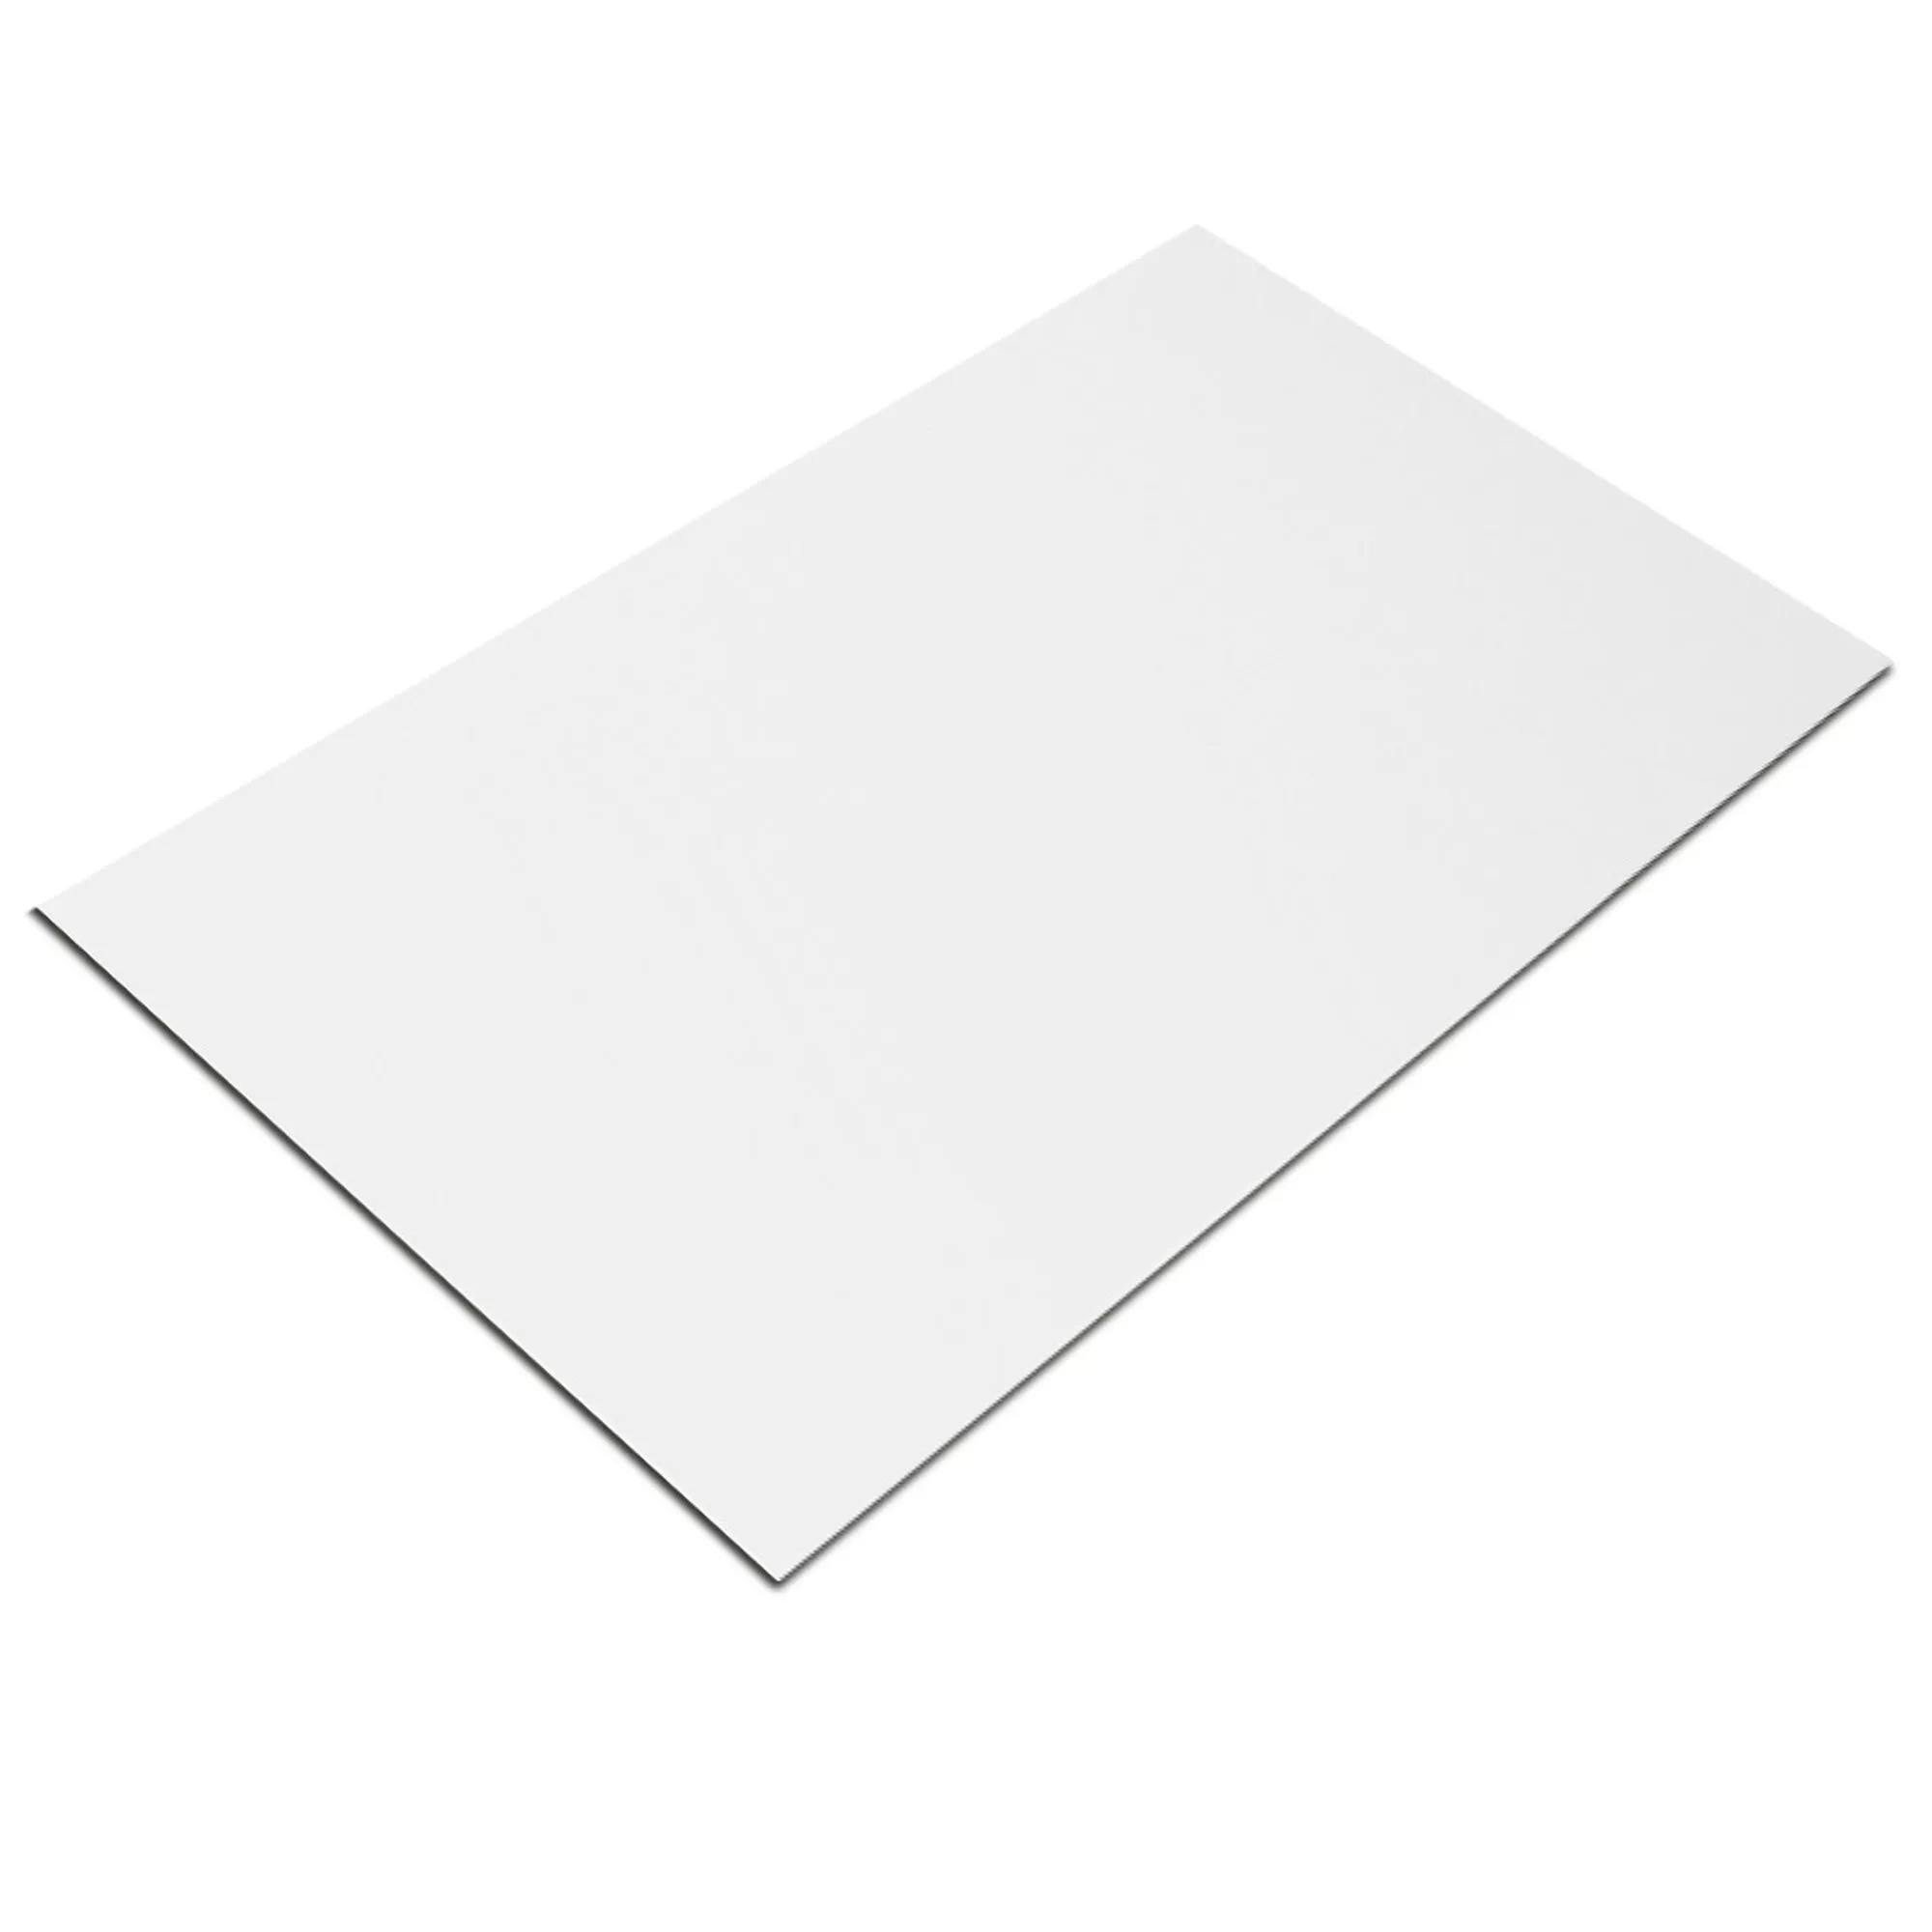 Próbka Płytki Ścienne Fenway Biały Matowy 30x60cm